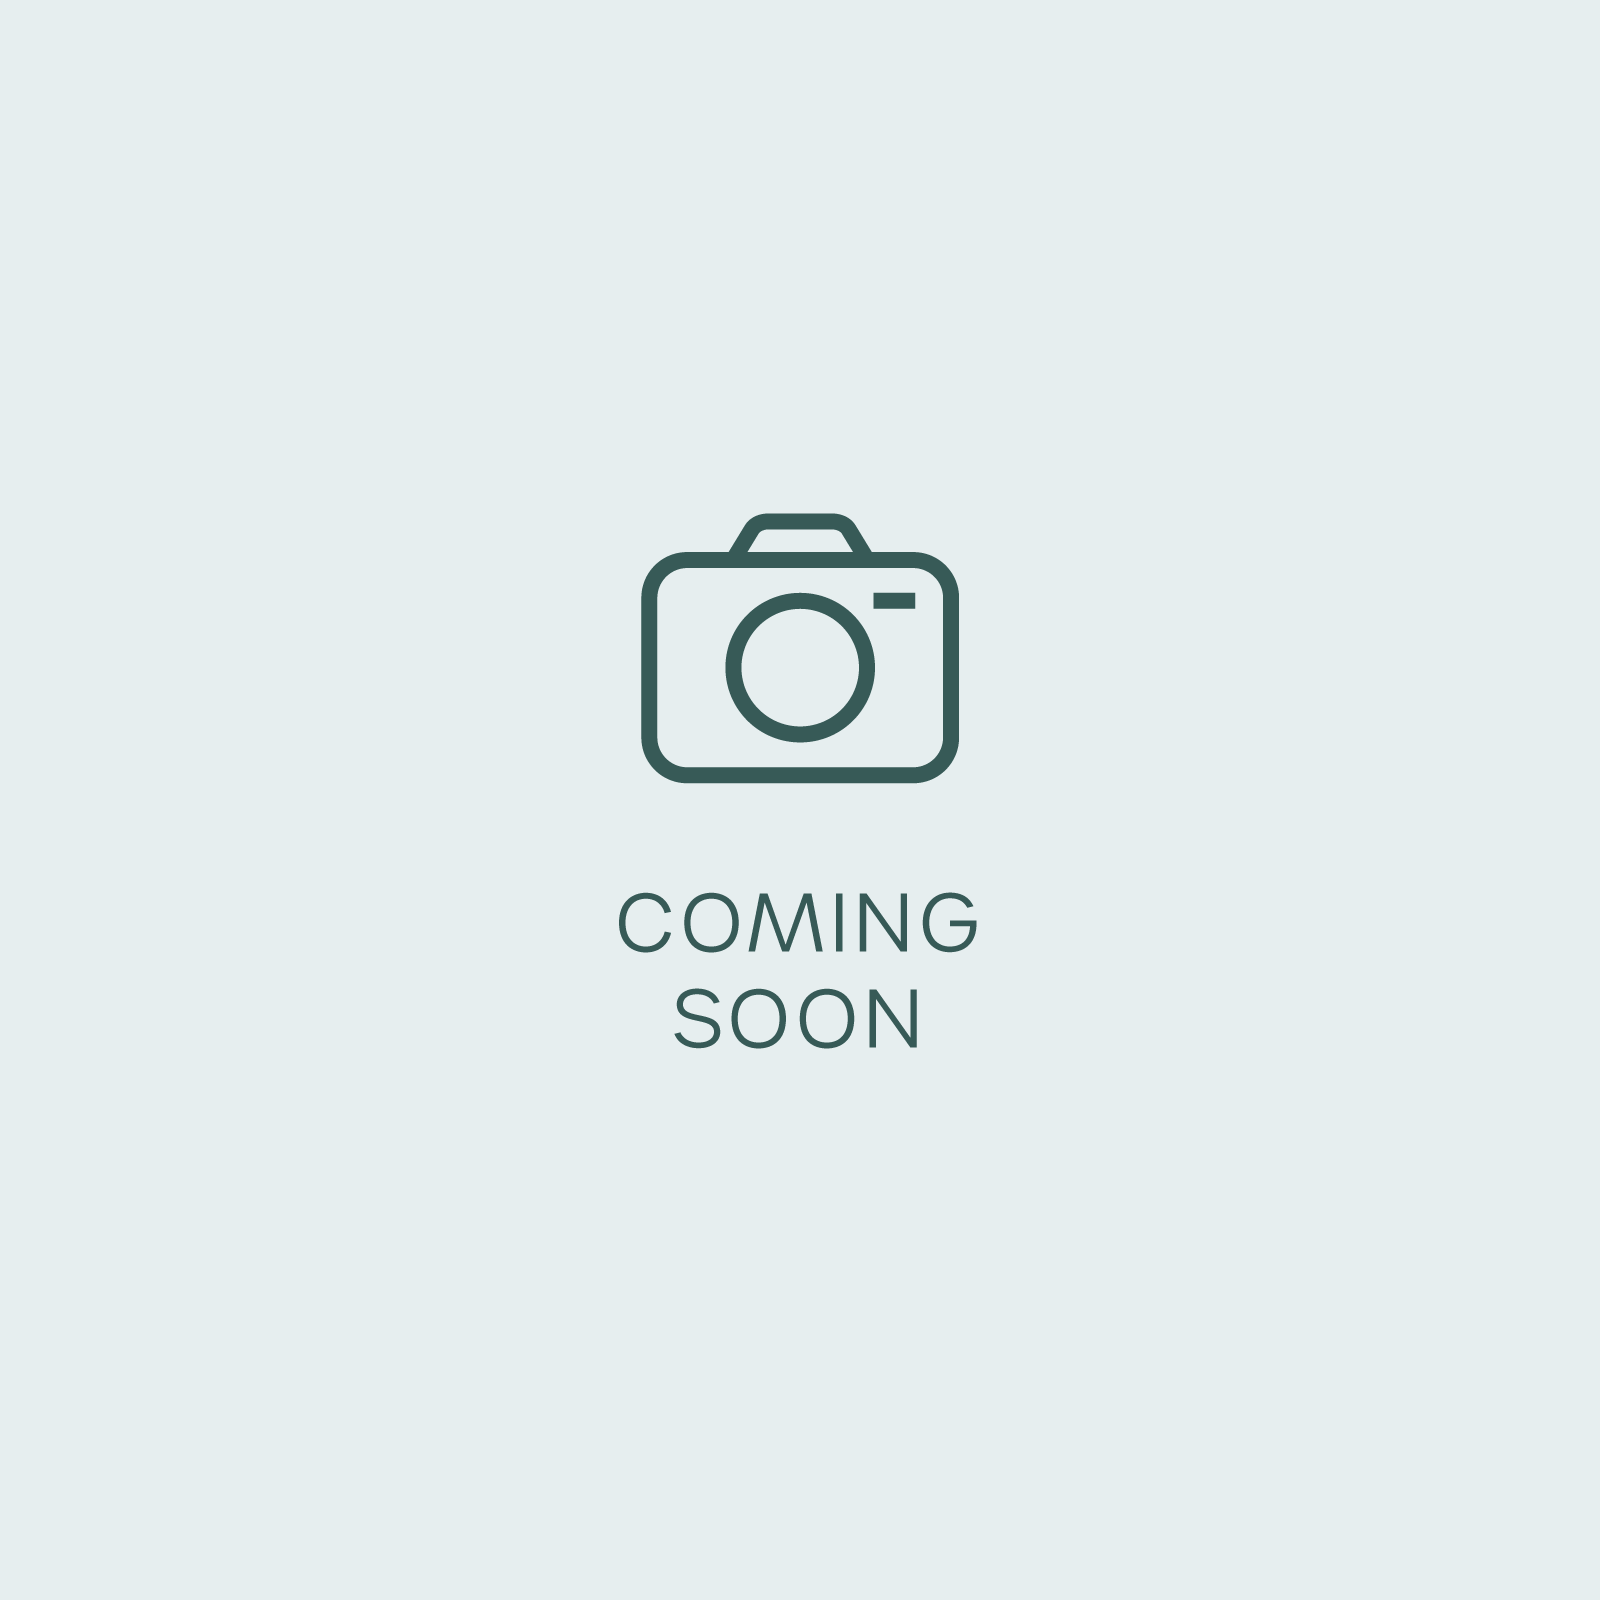 DocBlock Anthurium Zara '29' x (Michelle x Zara) '28' (Coming Soon)